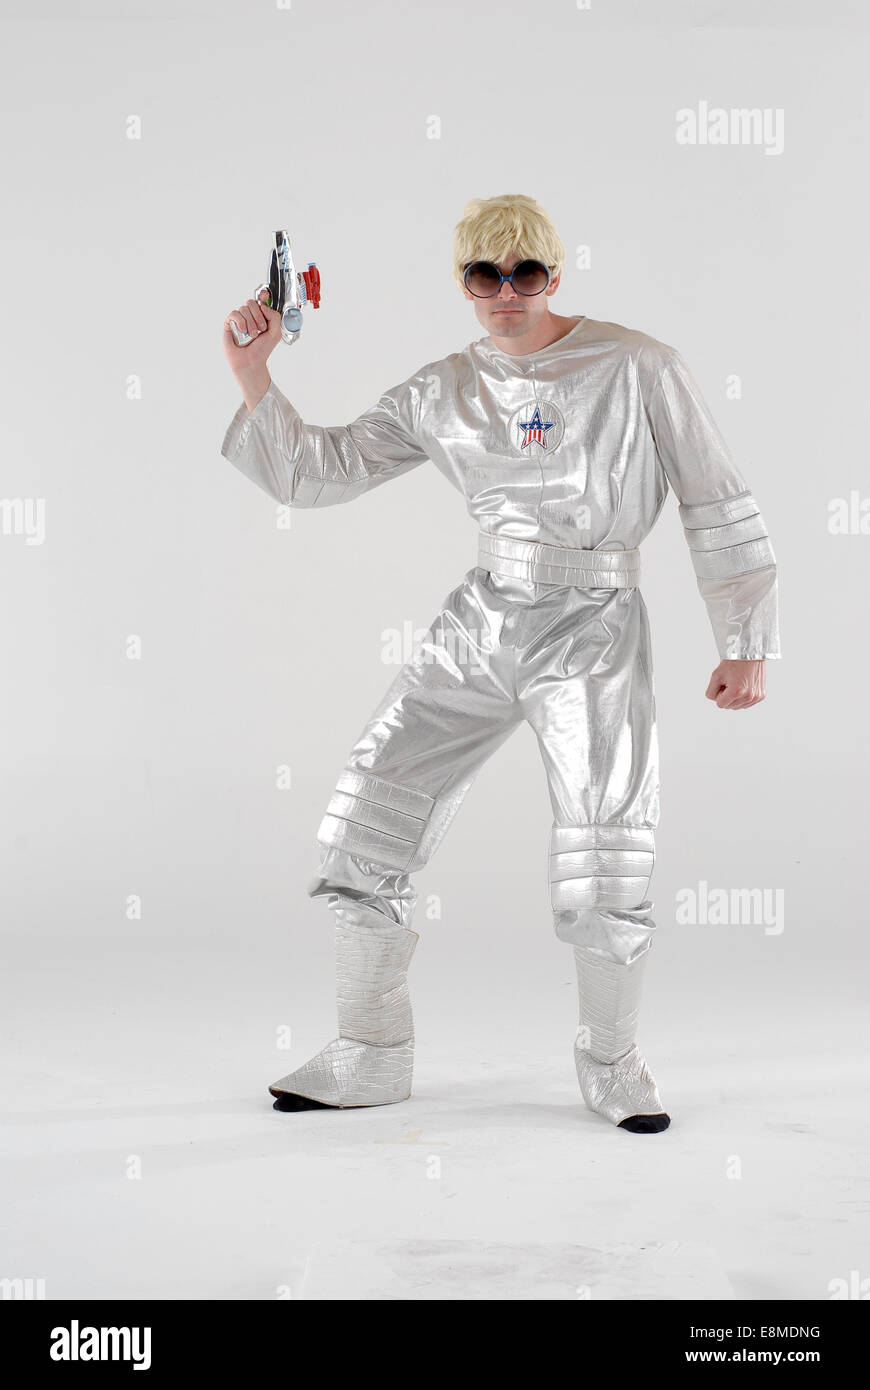 Space suit, Space suit costume, Retro fashion